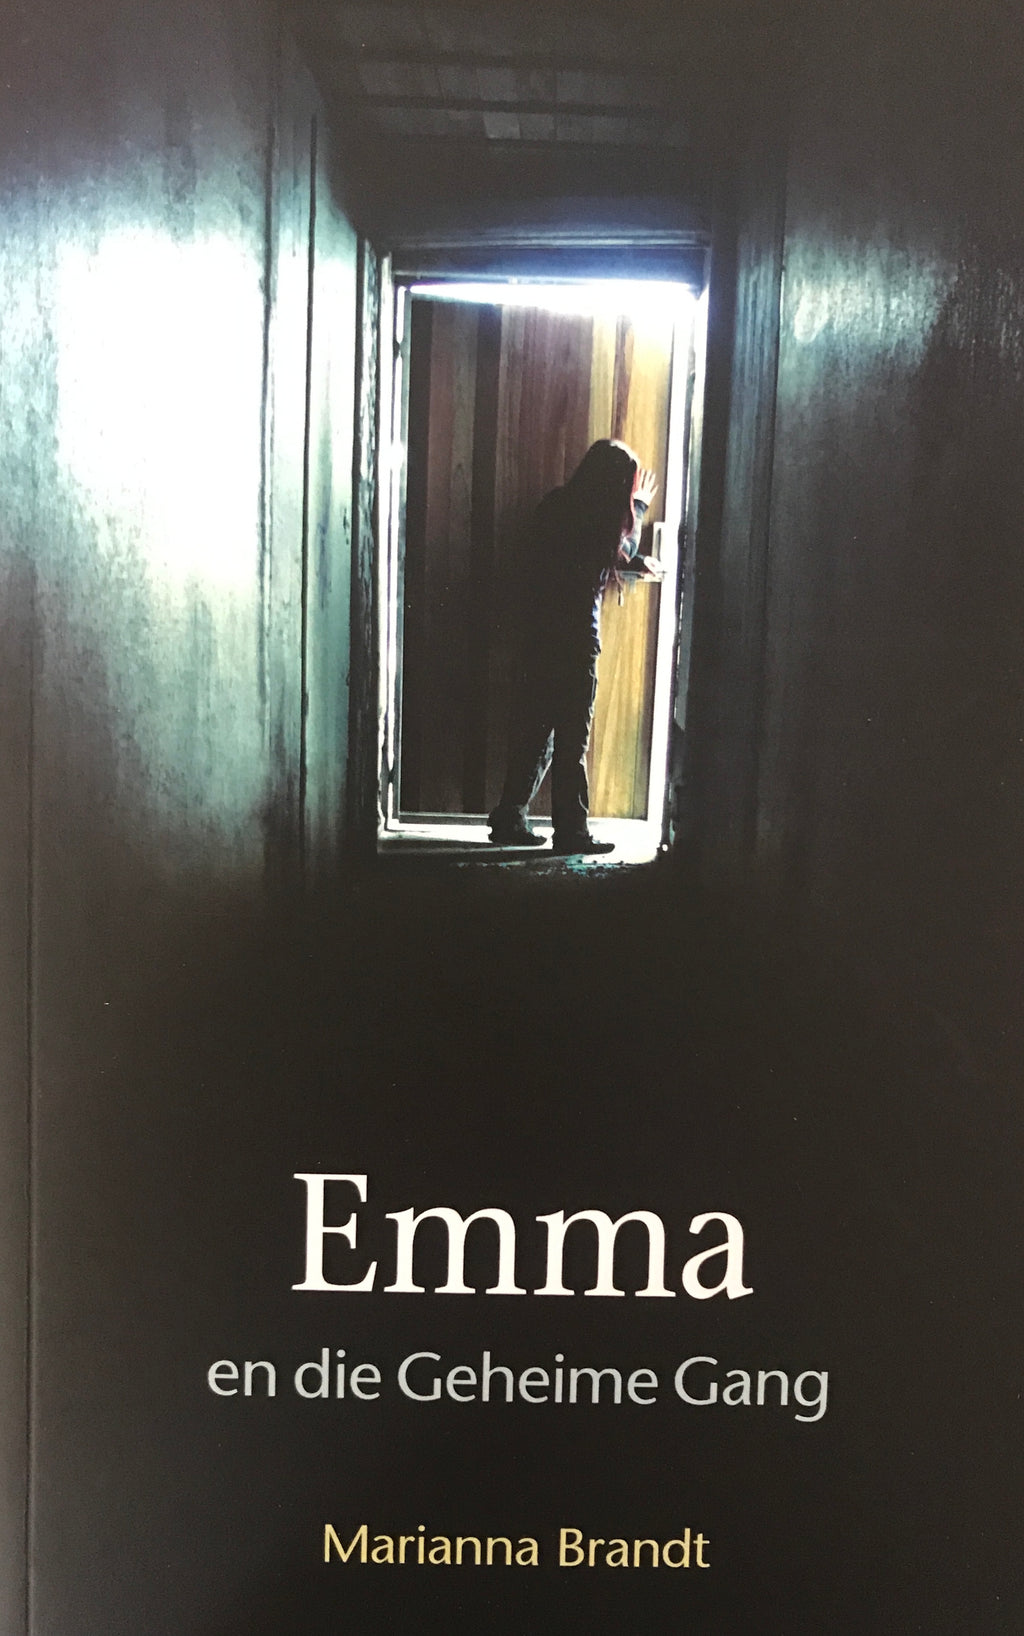 Emma en die geheime gang